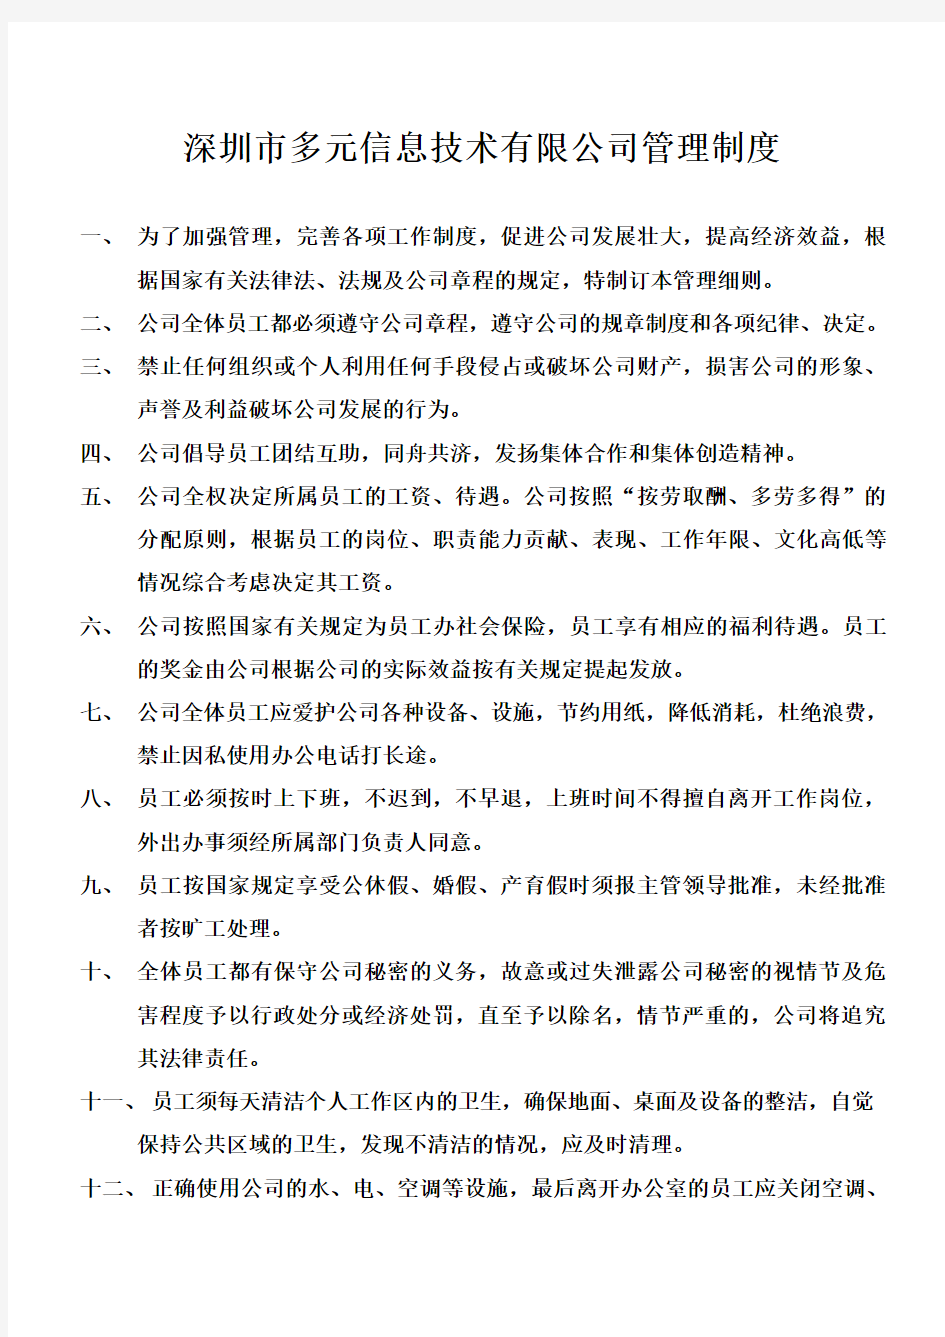 深圳市多元信息技术有限公司管理规章制度